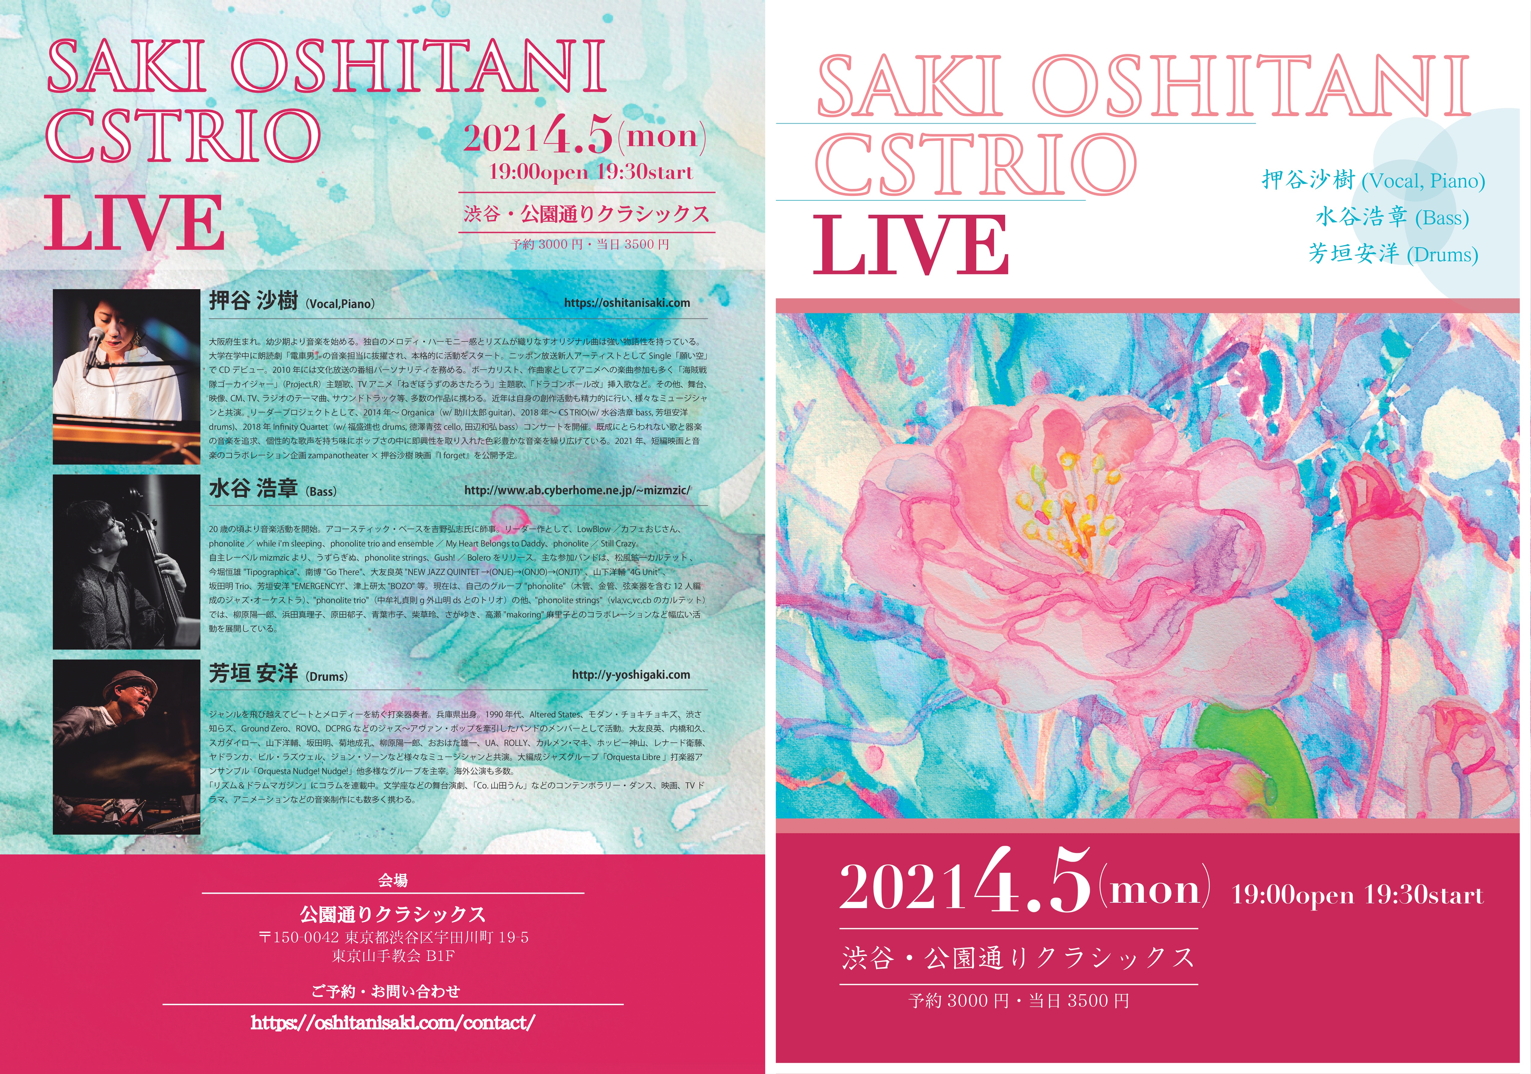 Saki Oshitani CS Trio